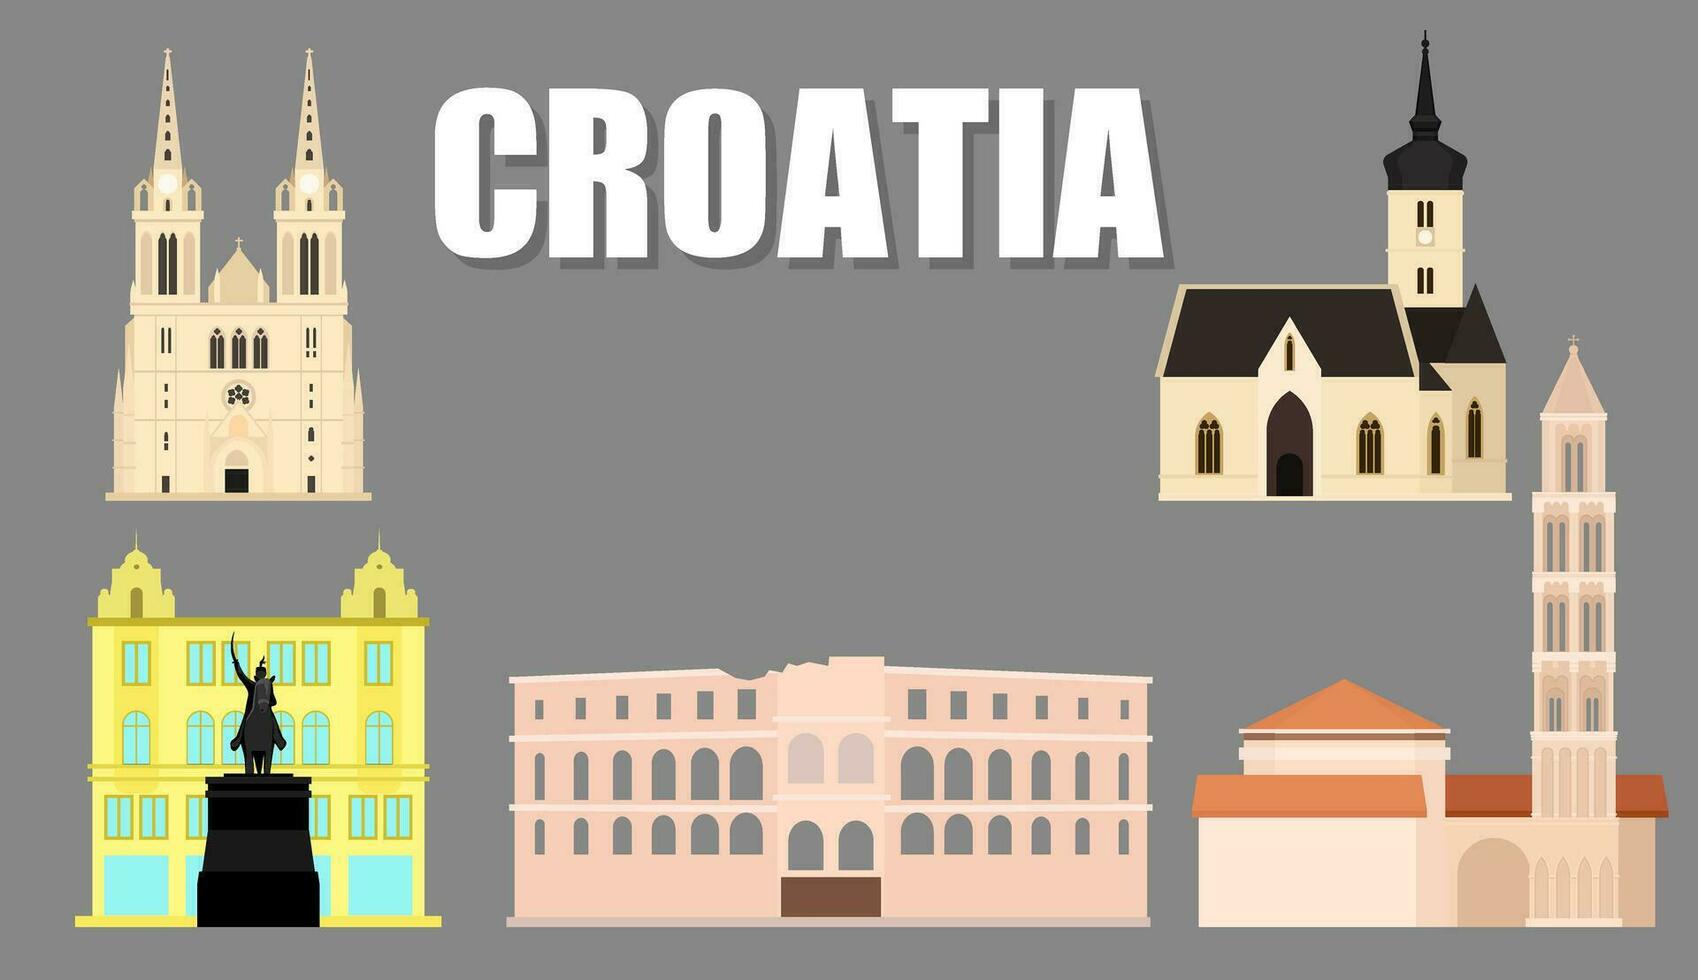 illustratie, toerist attracties oriëntatiepunten van Kroatië omvat st. mark's kerk, verbod jelacic vierkant, Zagreb kathedraal, pula arena, van Diocletianus paleis splitsen, vector. vector